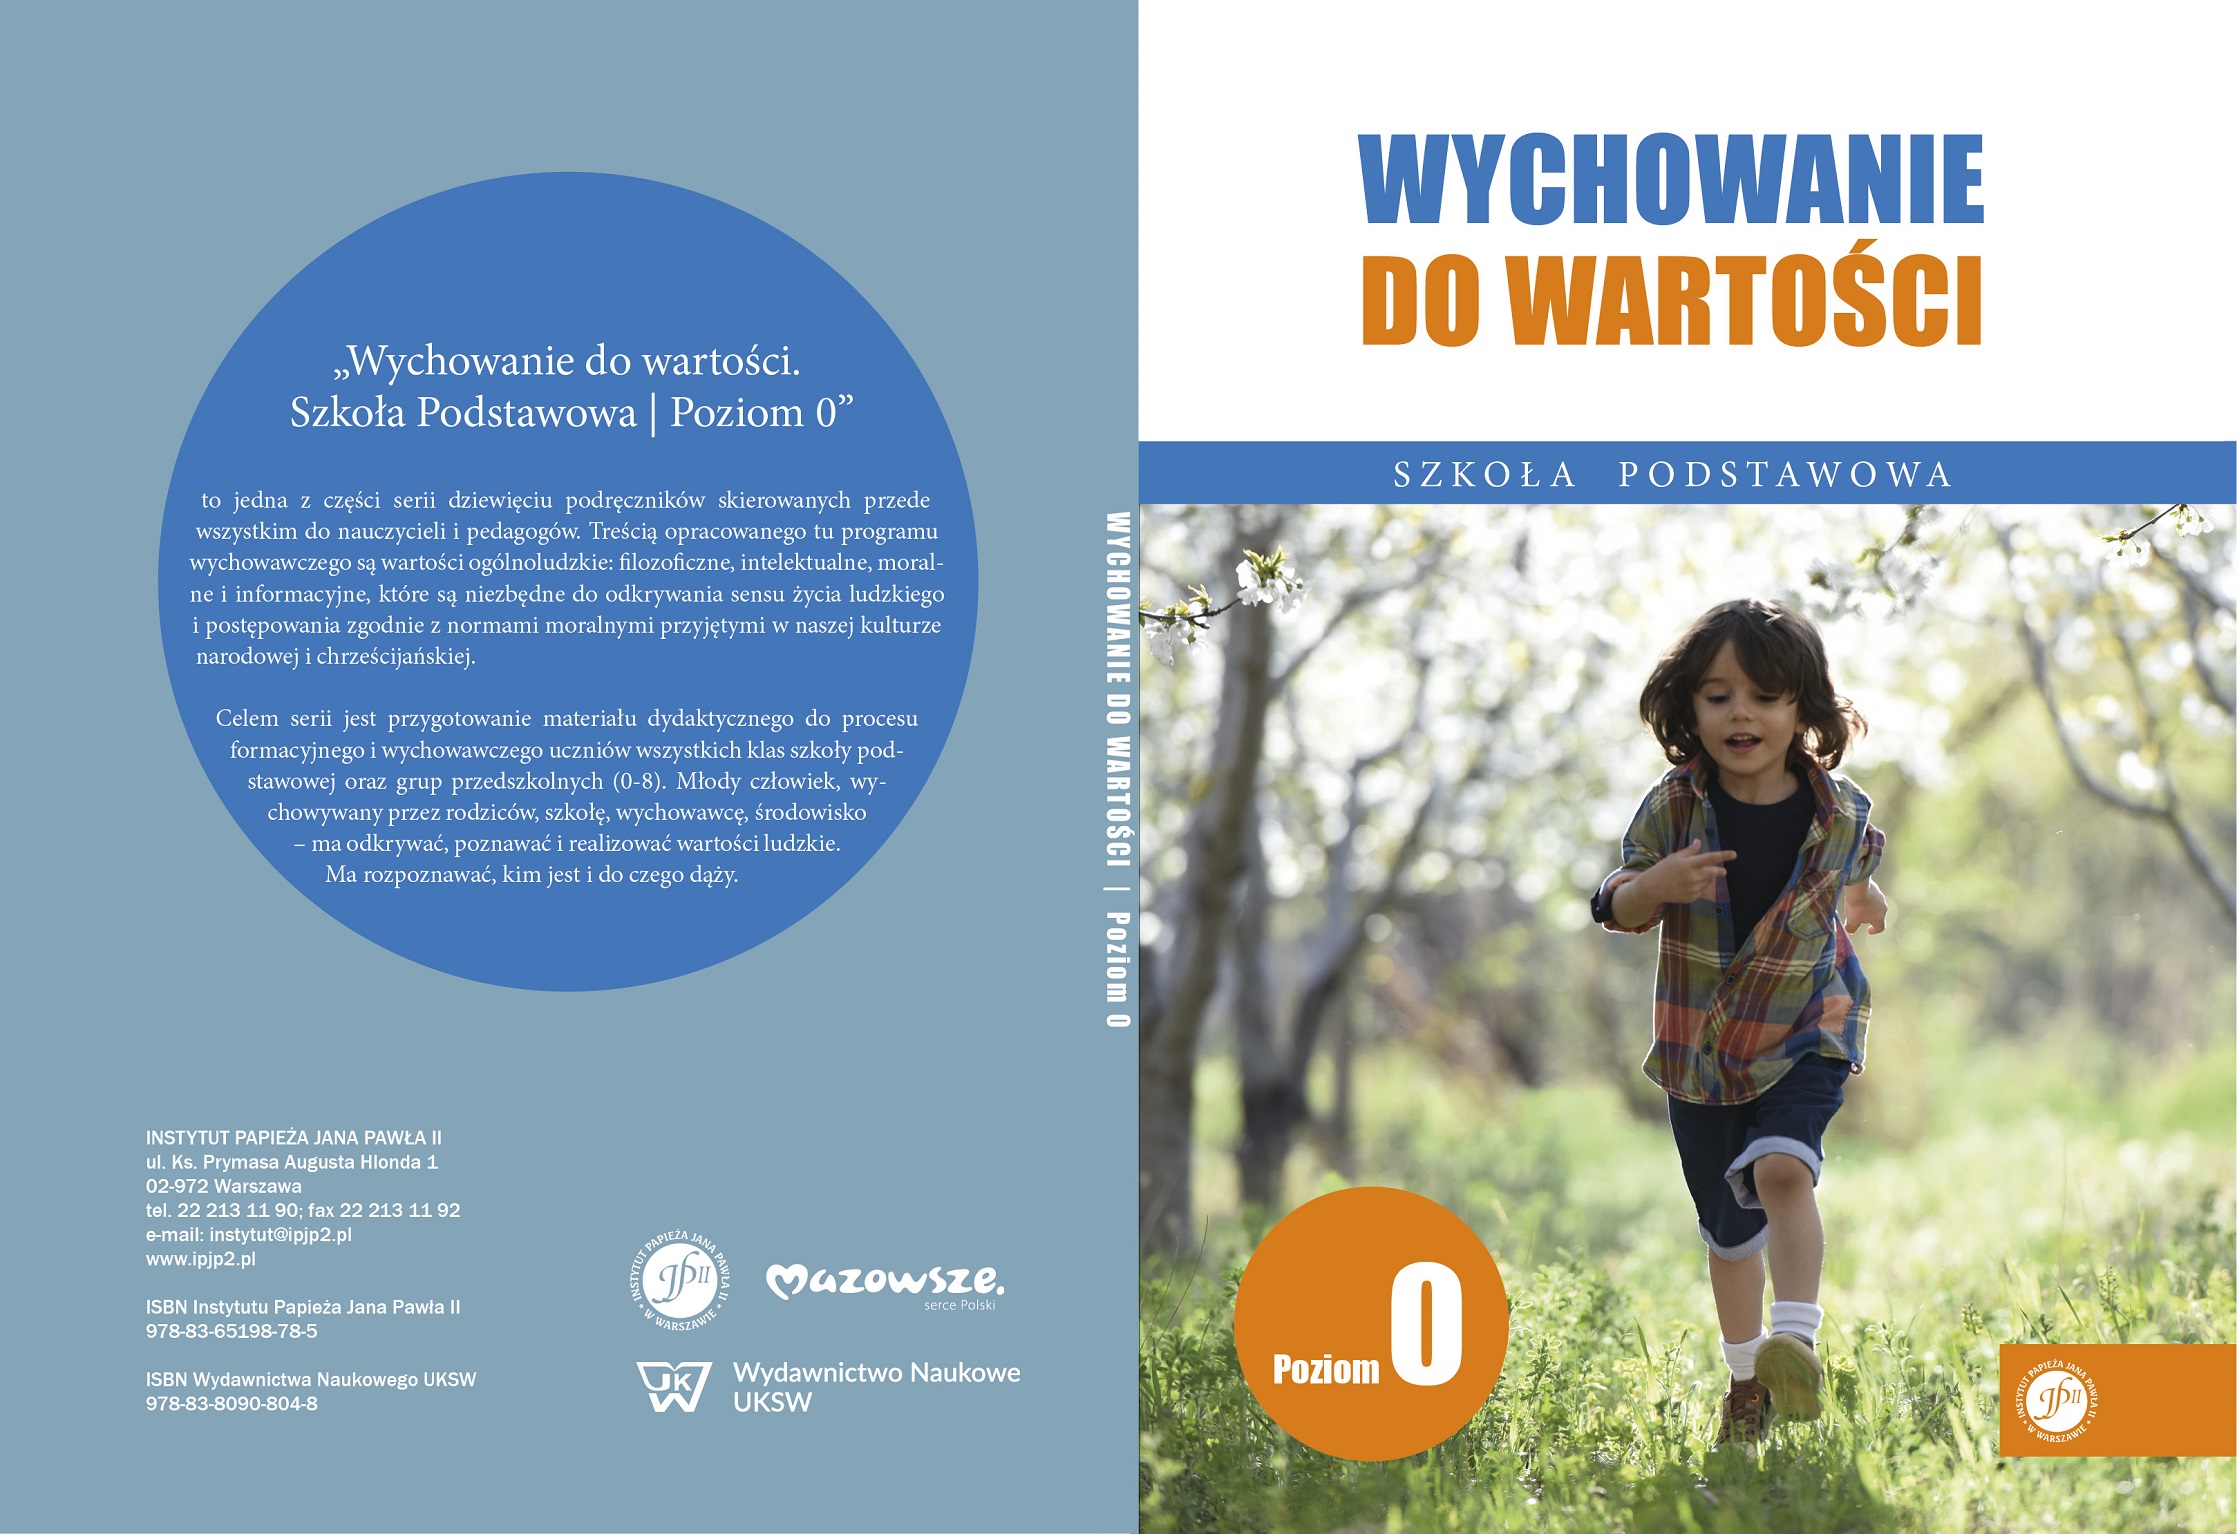 Ks. Zdzisław Struzik, Wychowanie do wartości. Szkoła podstawowa. Poziom 0, CD, Instytut Papieża Jana Pawła II, Warszawa 2020.